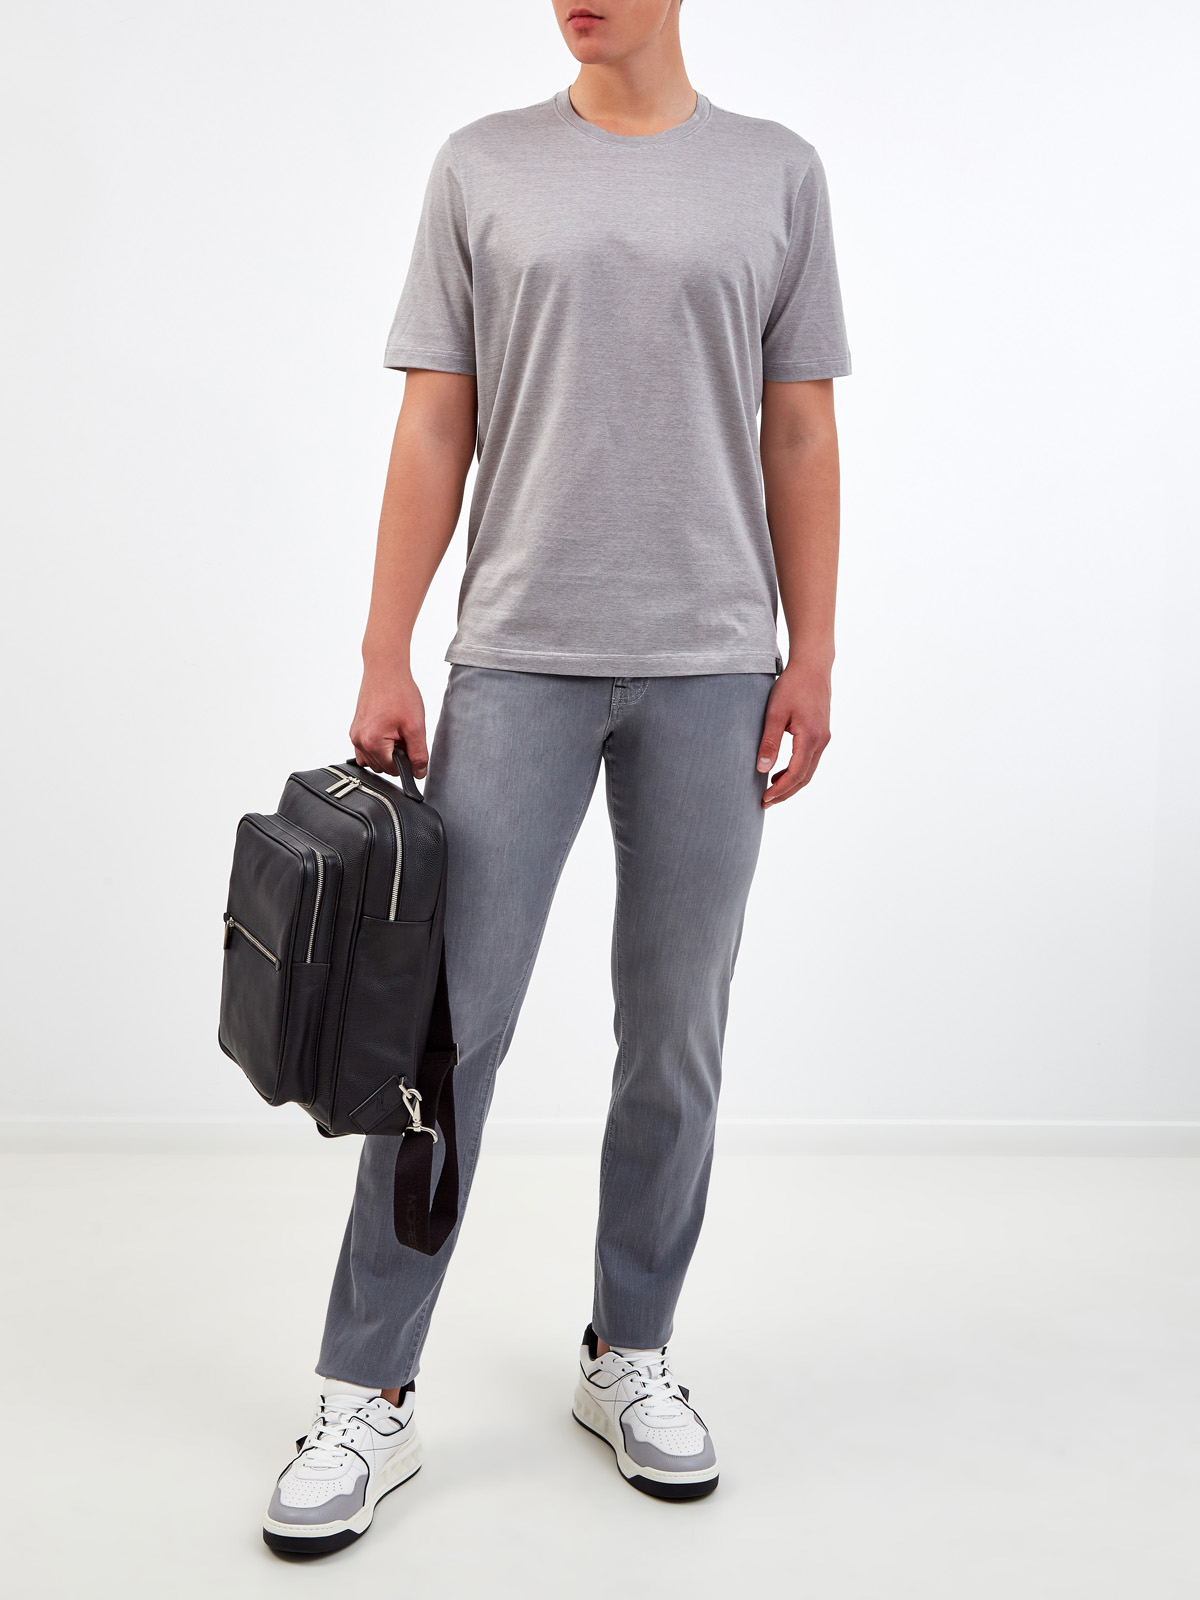 Хлопковая футболка с микро-принтом в тонкую полоску GRAN SASSO, цвет серый, размер 48;52;54;56;50 - фото 2